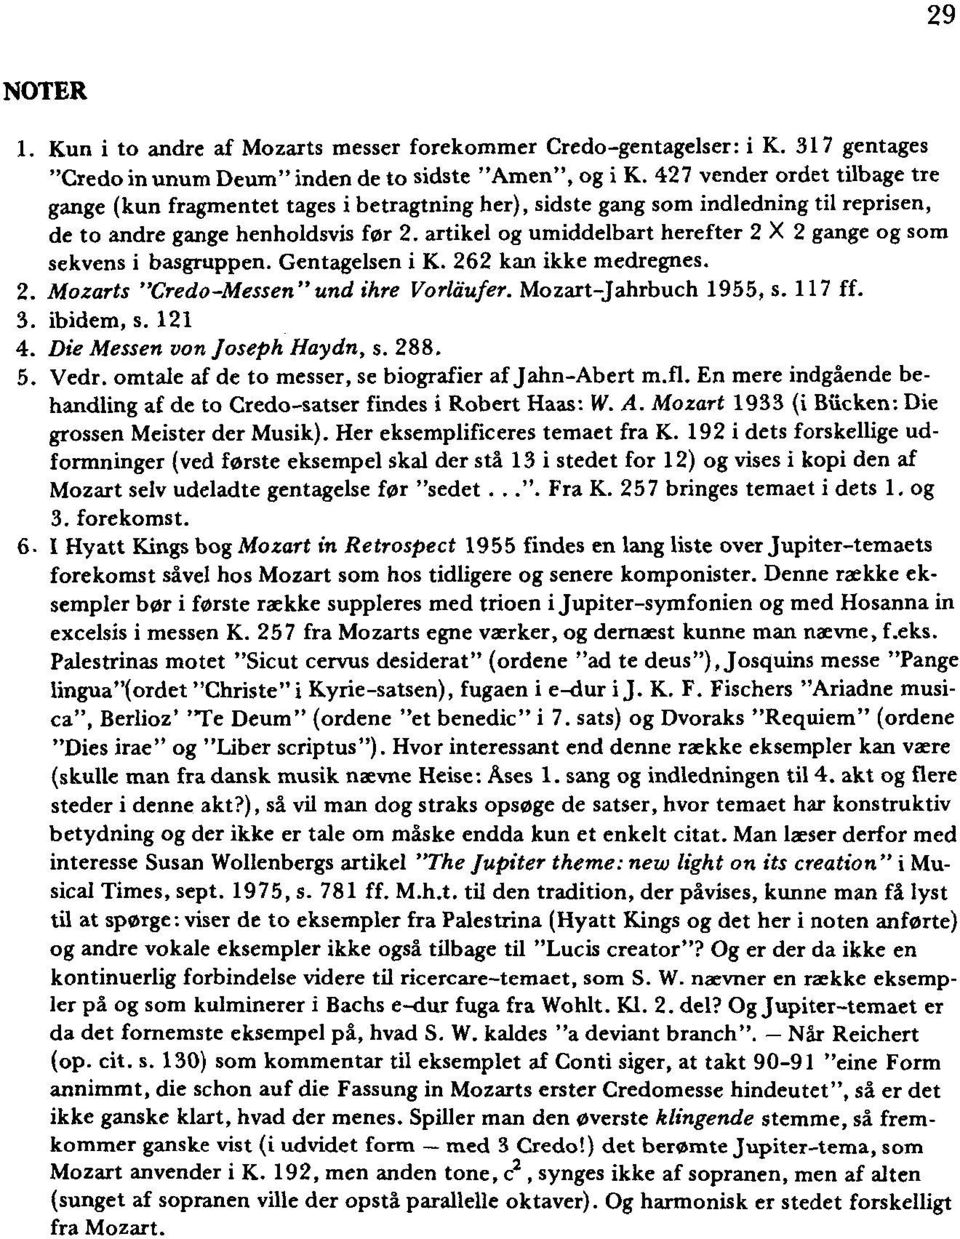 artikel og umiddelbart herefter 2 X 2 gange og som sekvens i basgruppen. Gentagelsen i K. 262 kan ikke medregnes. 2. Mozarts "Credo-Messen" und ihre Vorlau/er. Mozart-Jahrbuch 1955, s. 117 ff. 3.